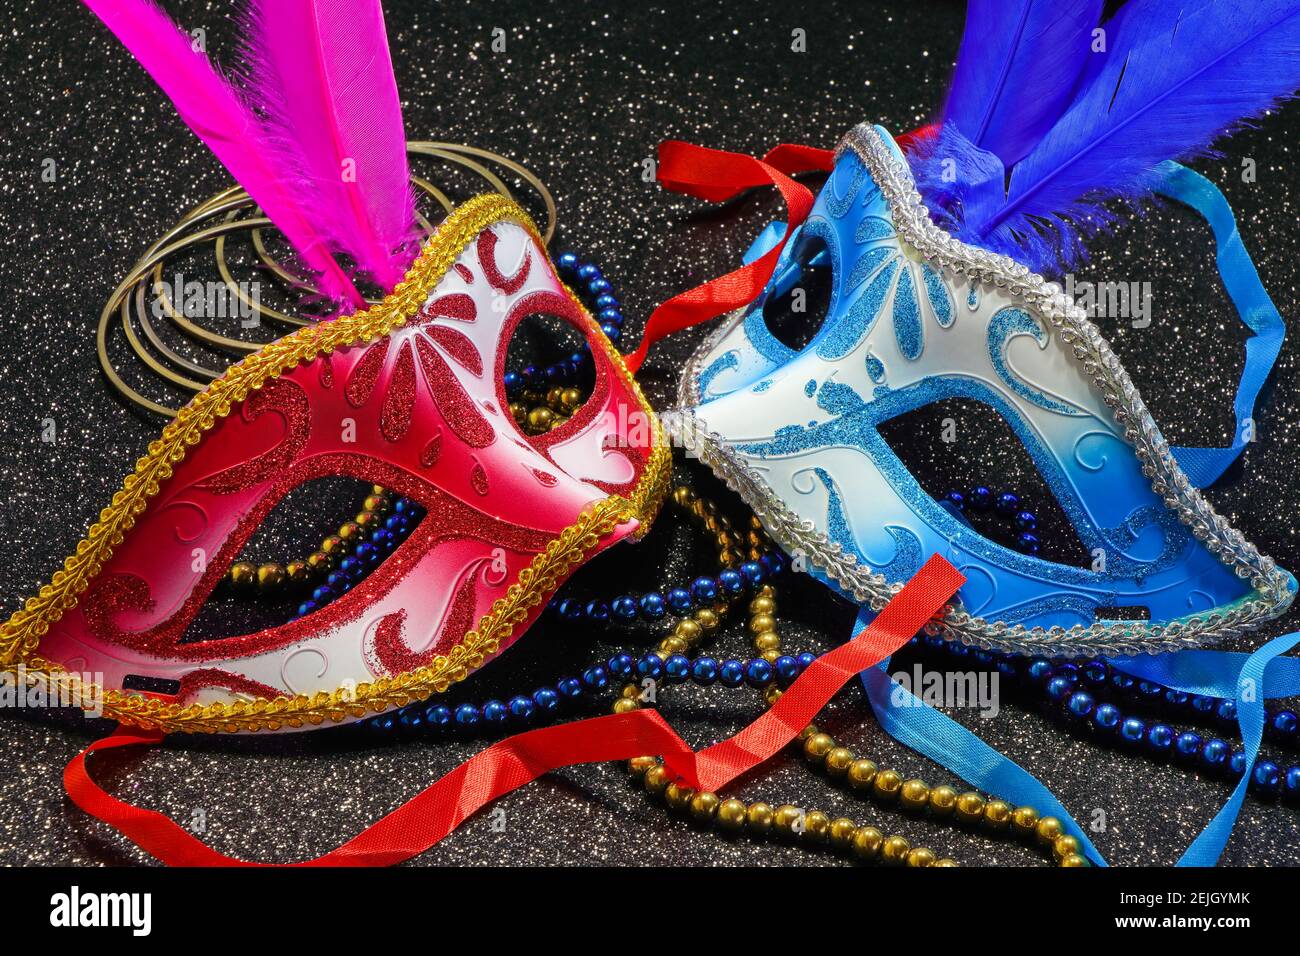 Masques de carnaval avec plumes et bijoux Photo Stock - Alamy